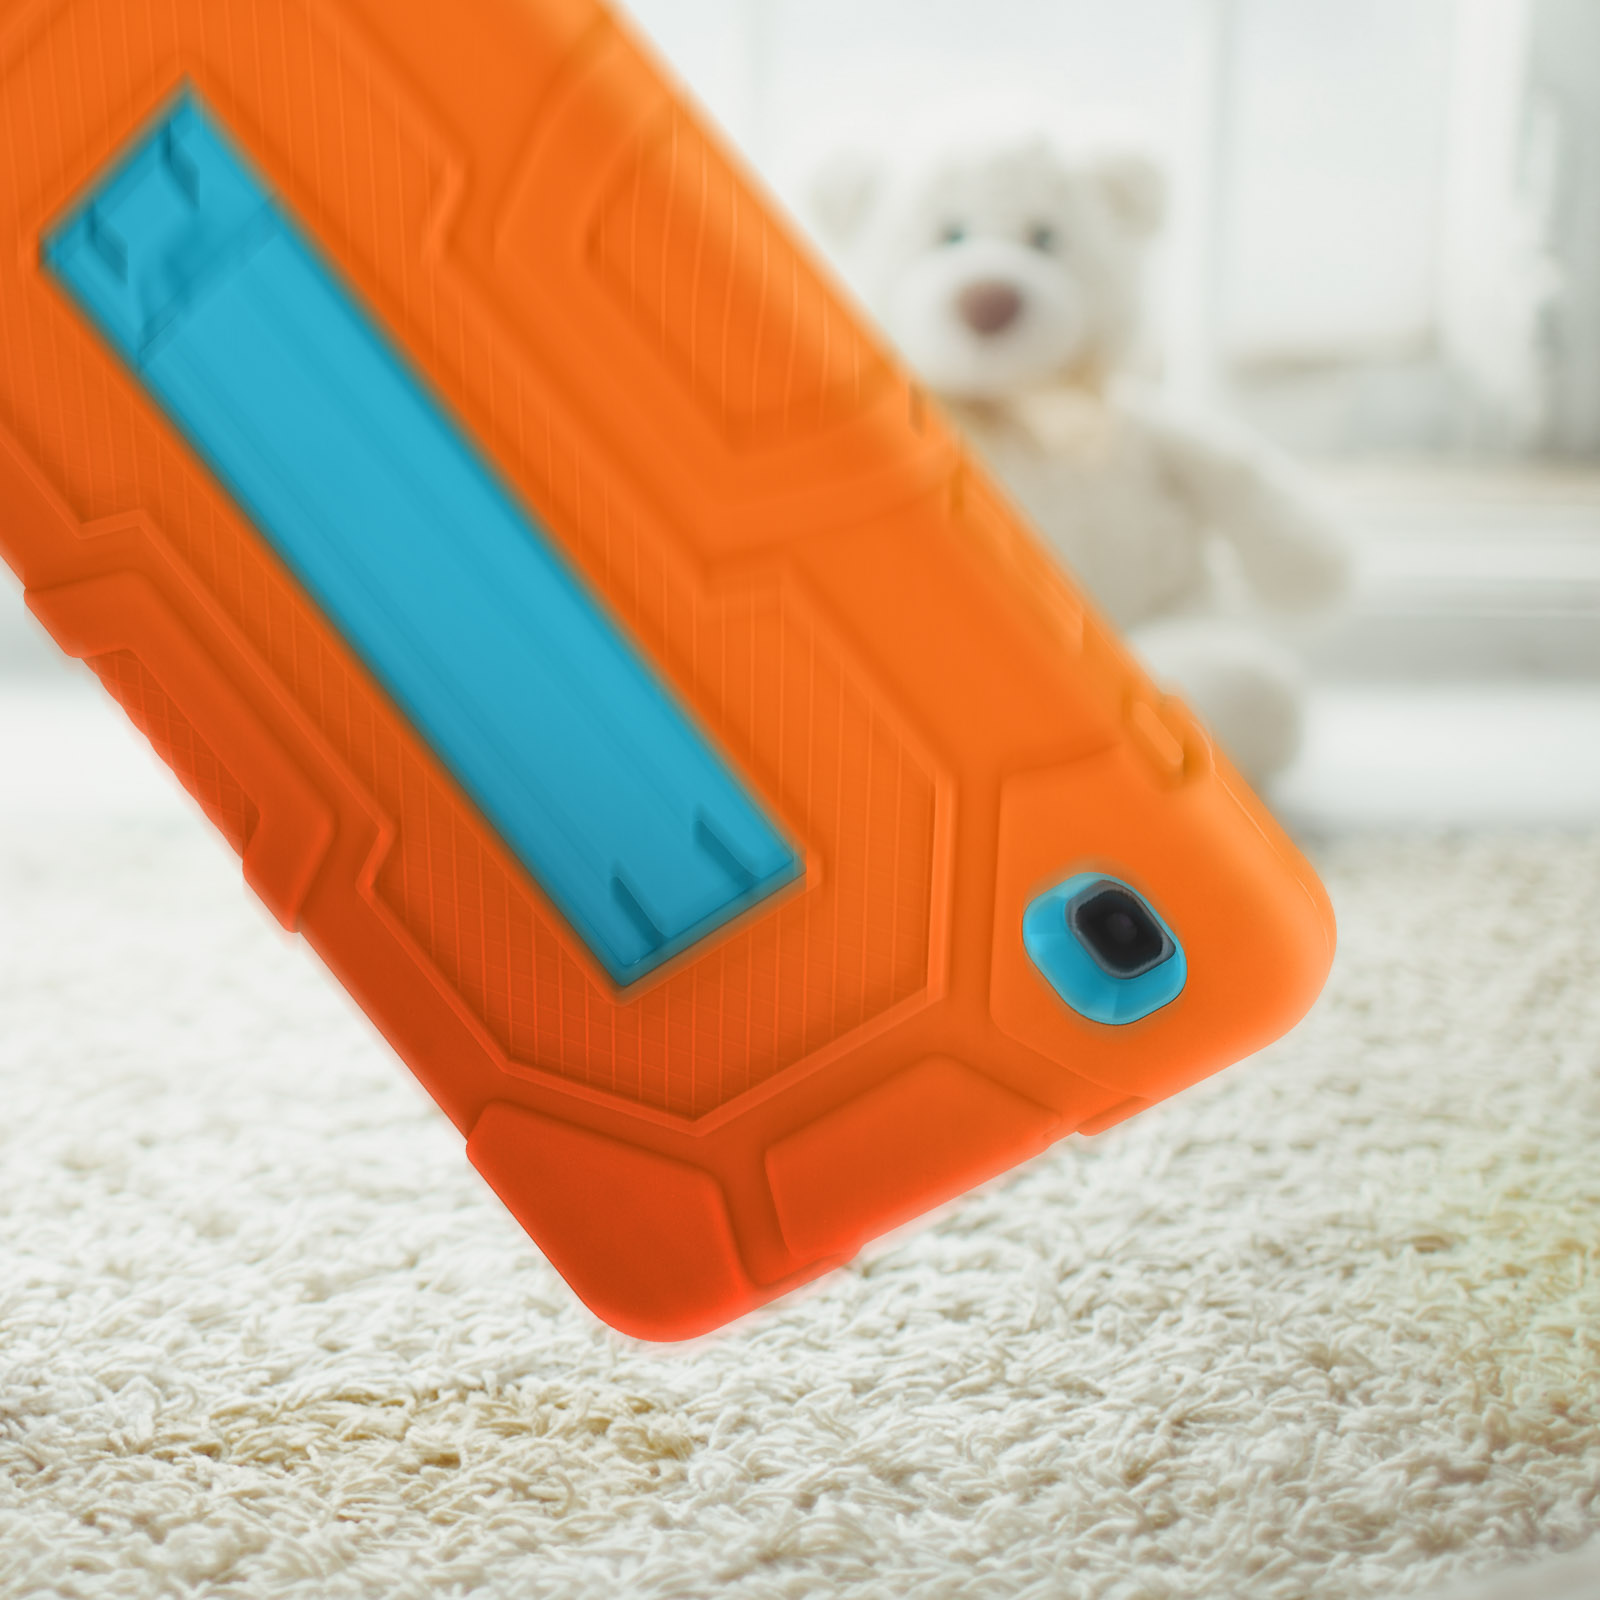 AVIZAR Kick Backcover Silikongel, für Orange Series Polycarbonat und Samsung Schutzhüllen